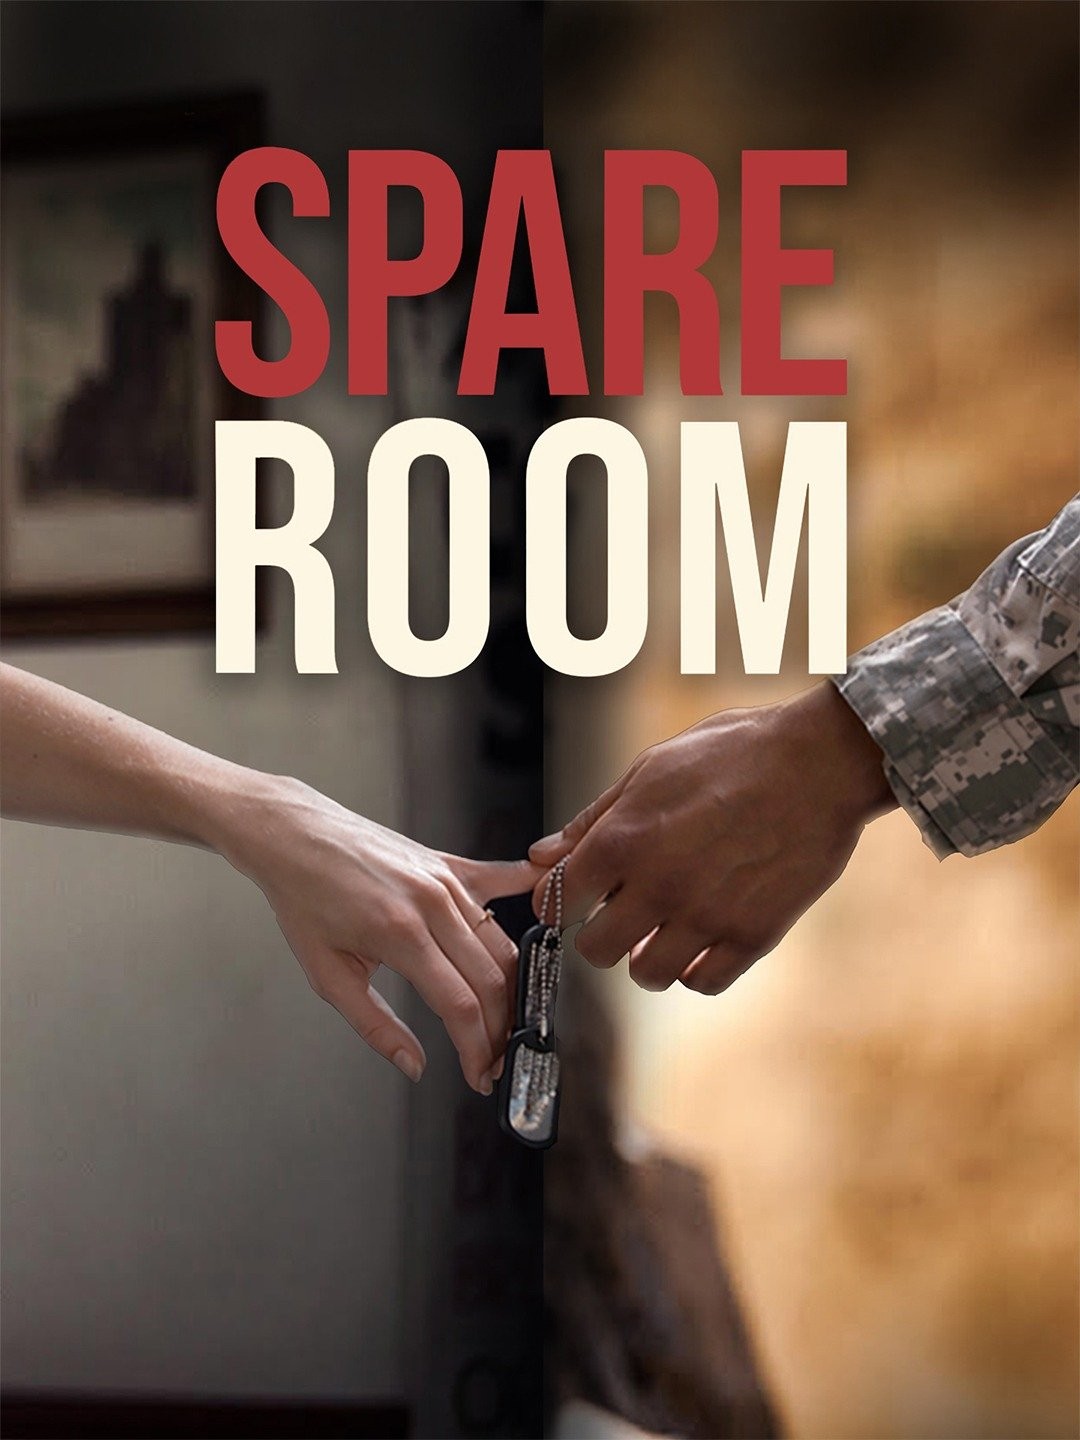 Escape Room - Rotten Tomatoes